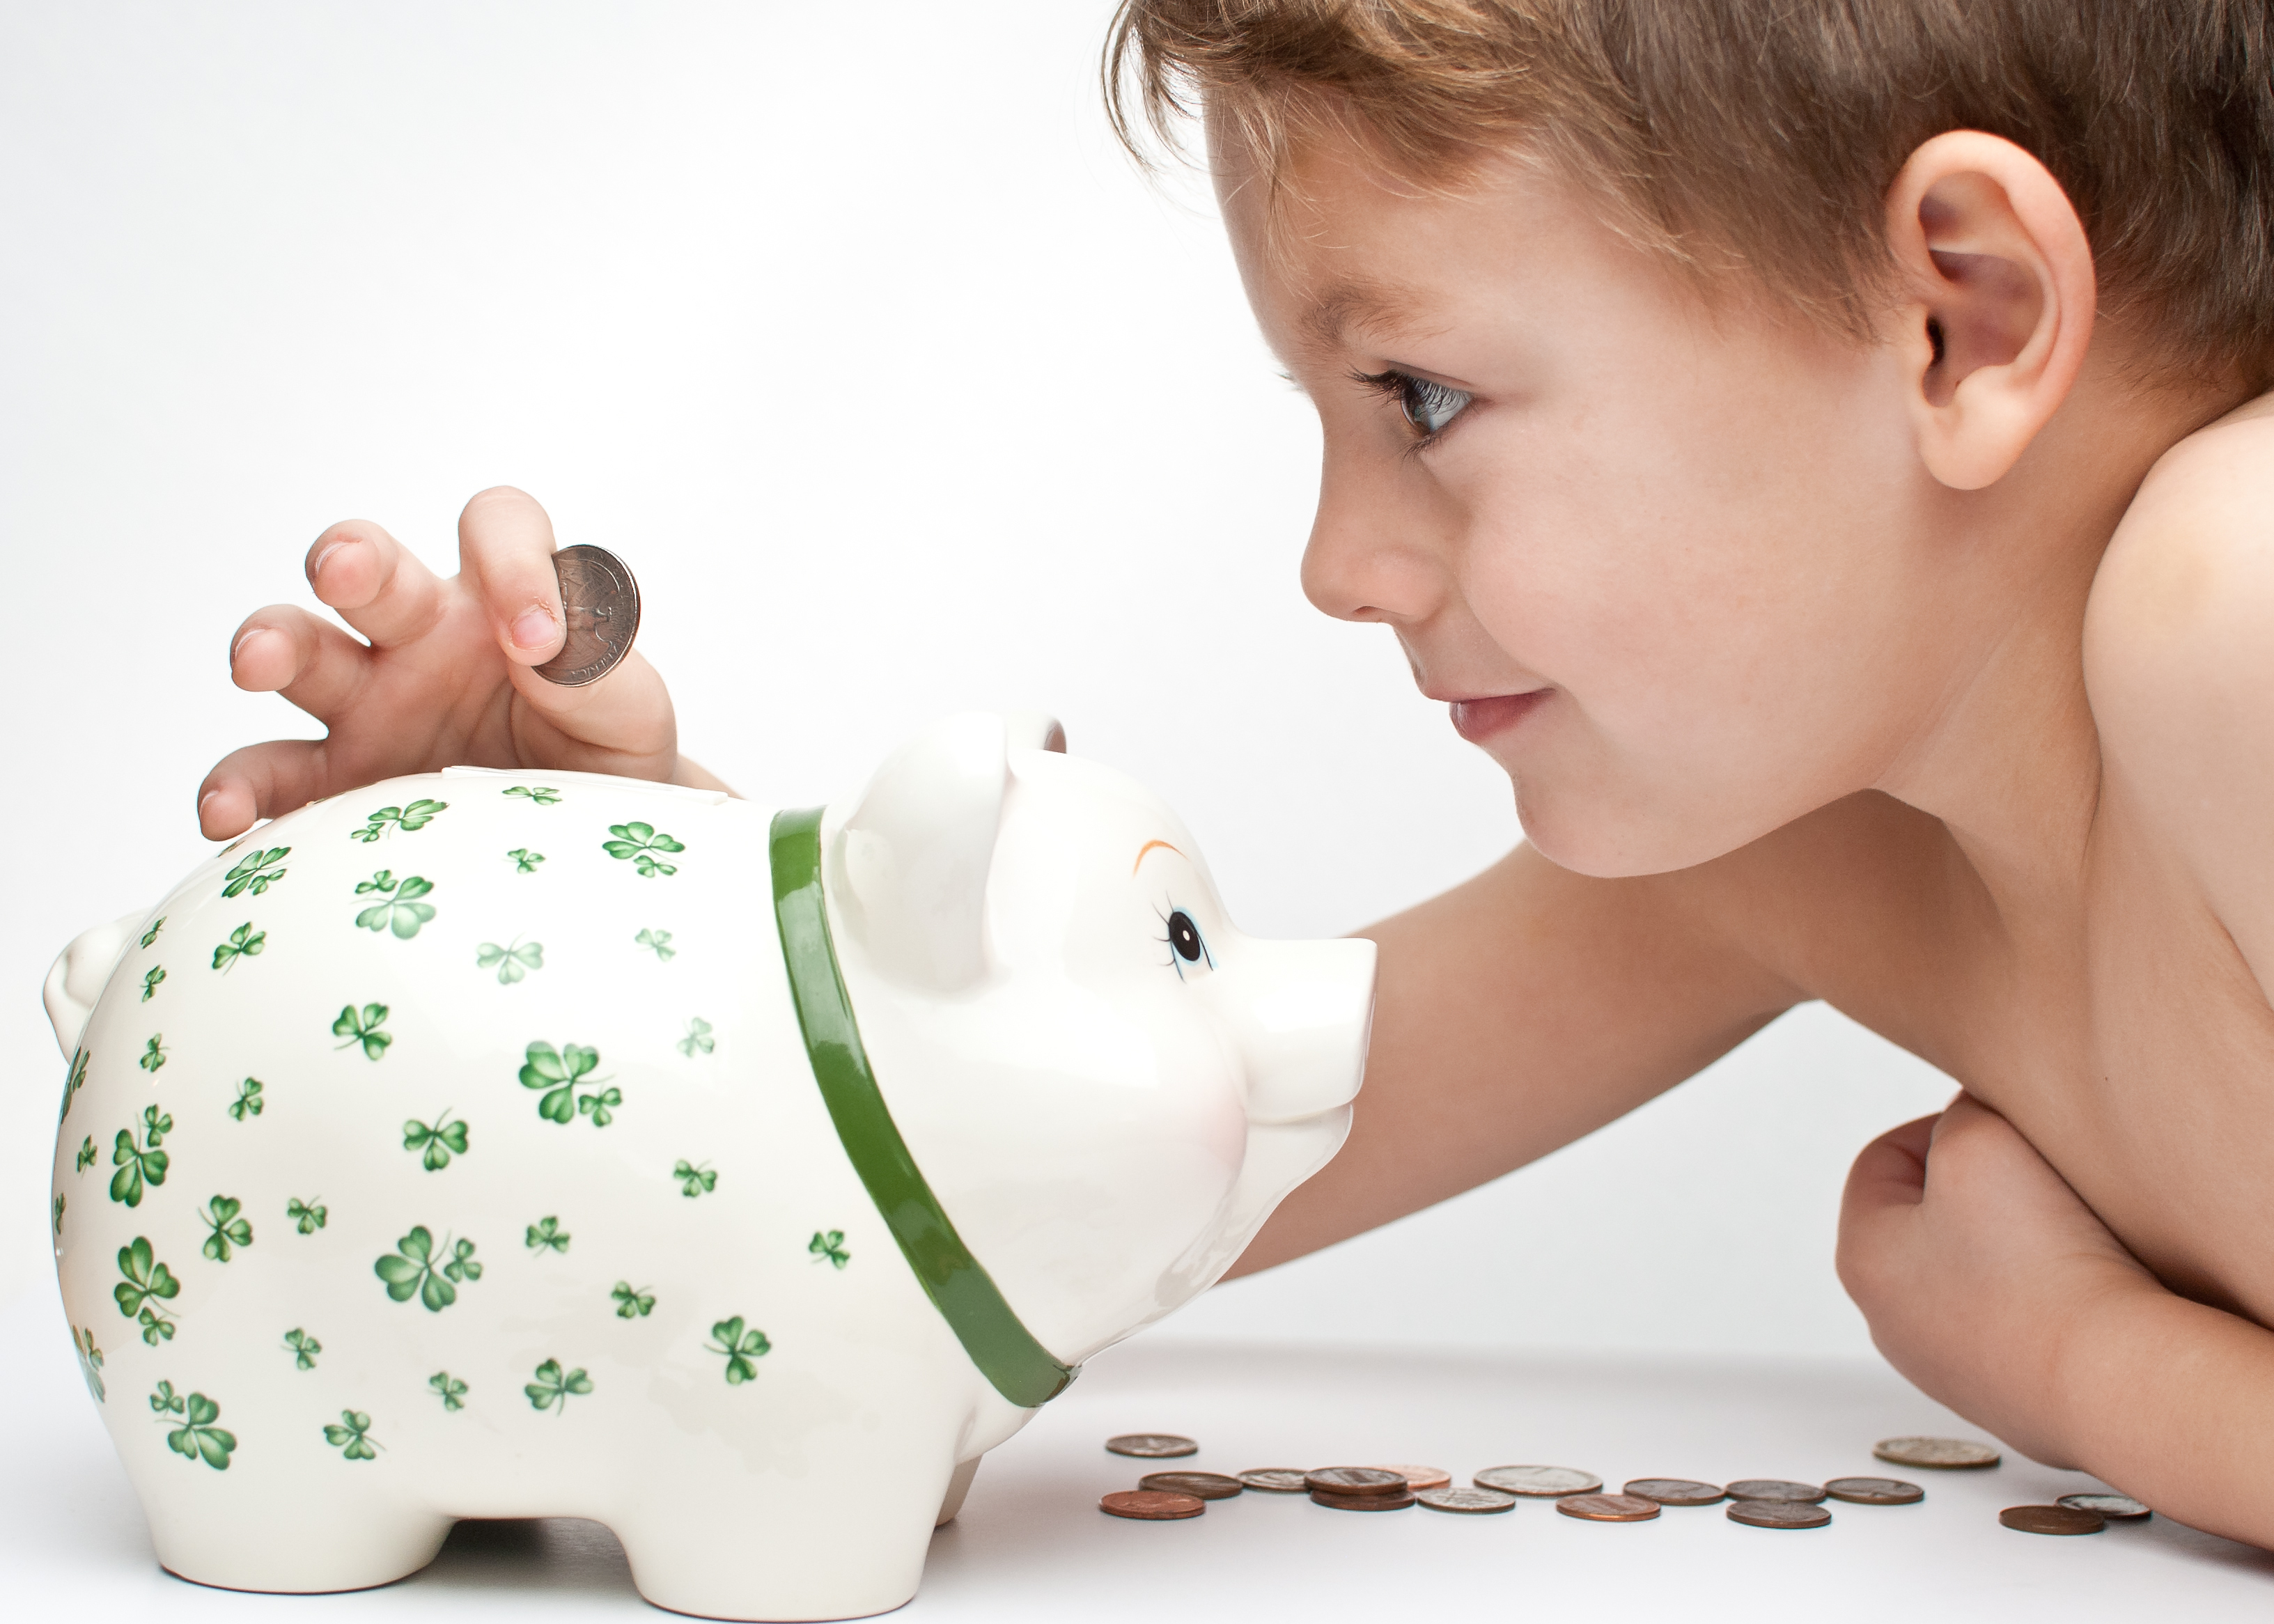 Educação financeira para crianças - Por que começar desde cedo? 